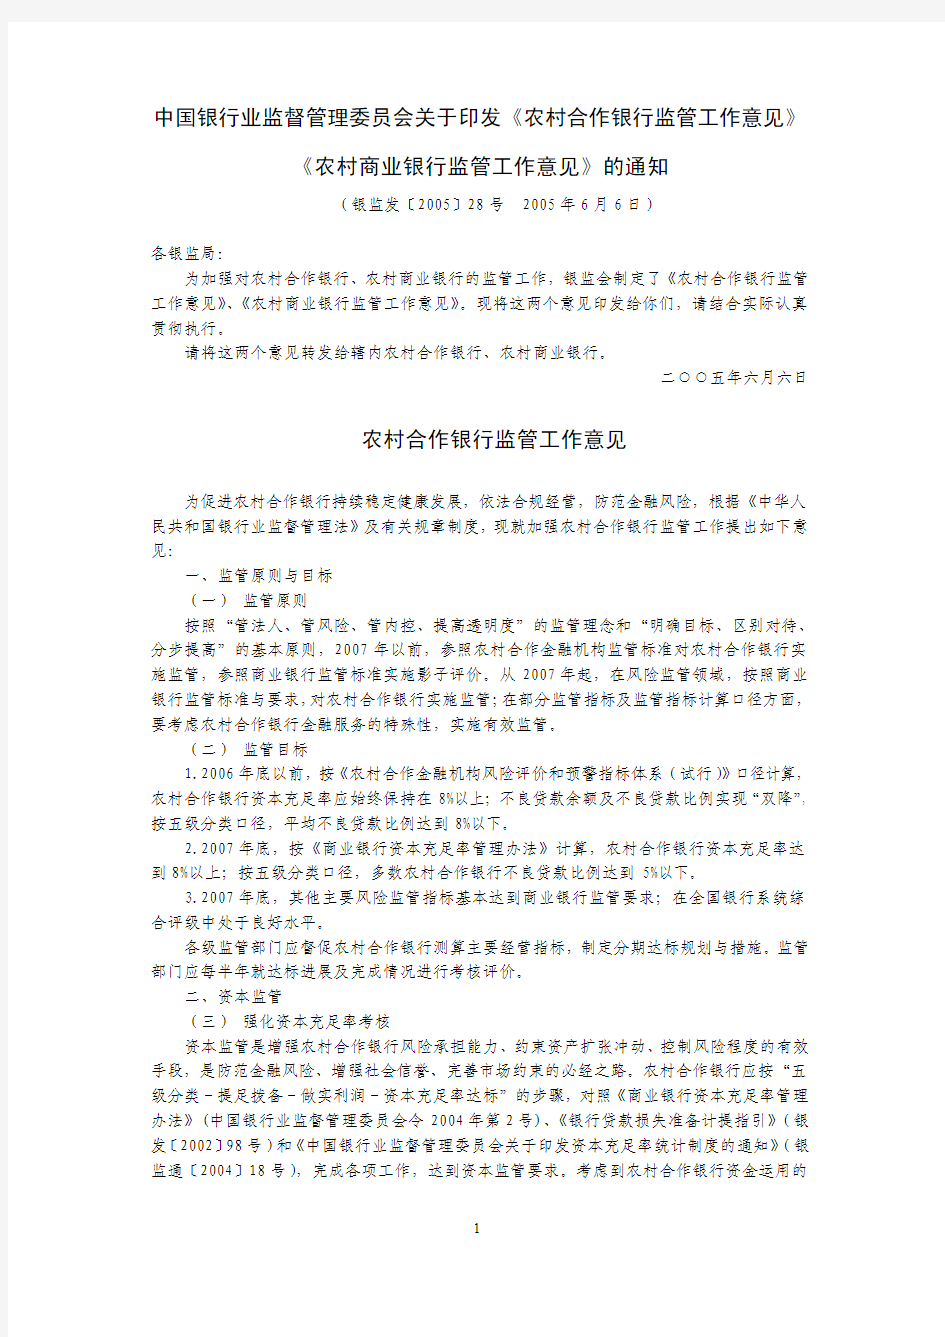 银监发〔2005〕28号 中国银行业监督管理委员会关于印发《农村合作银行监管工作意见》《农村商业银行监管》